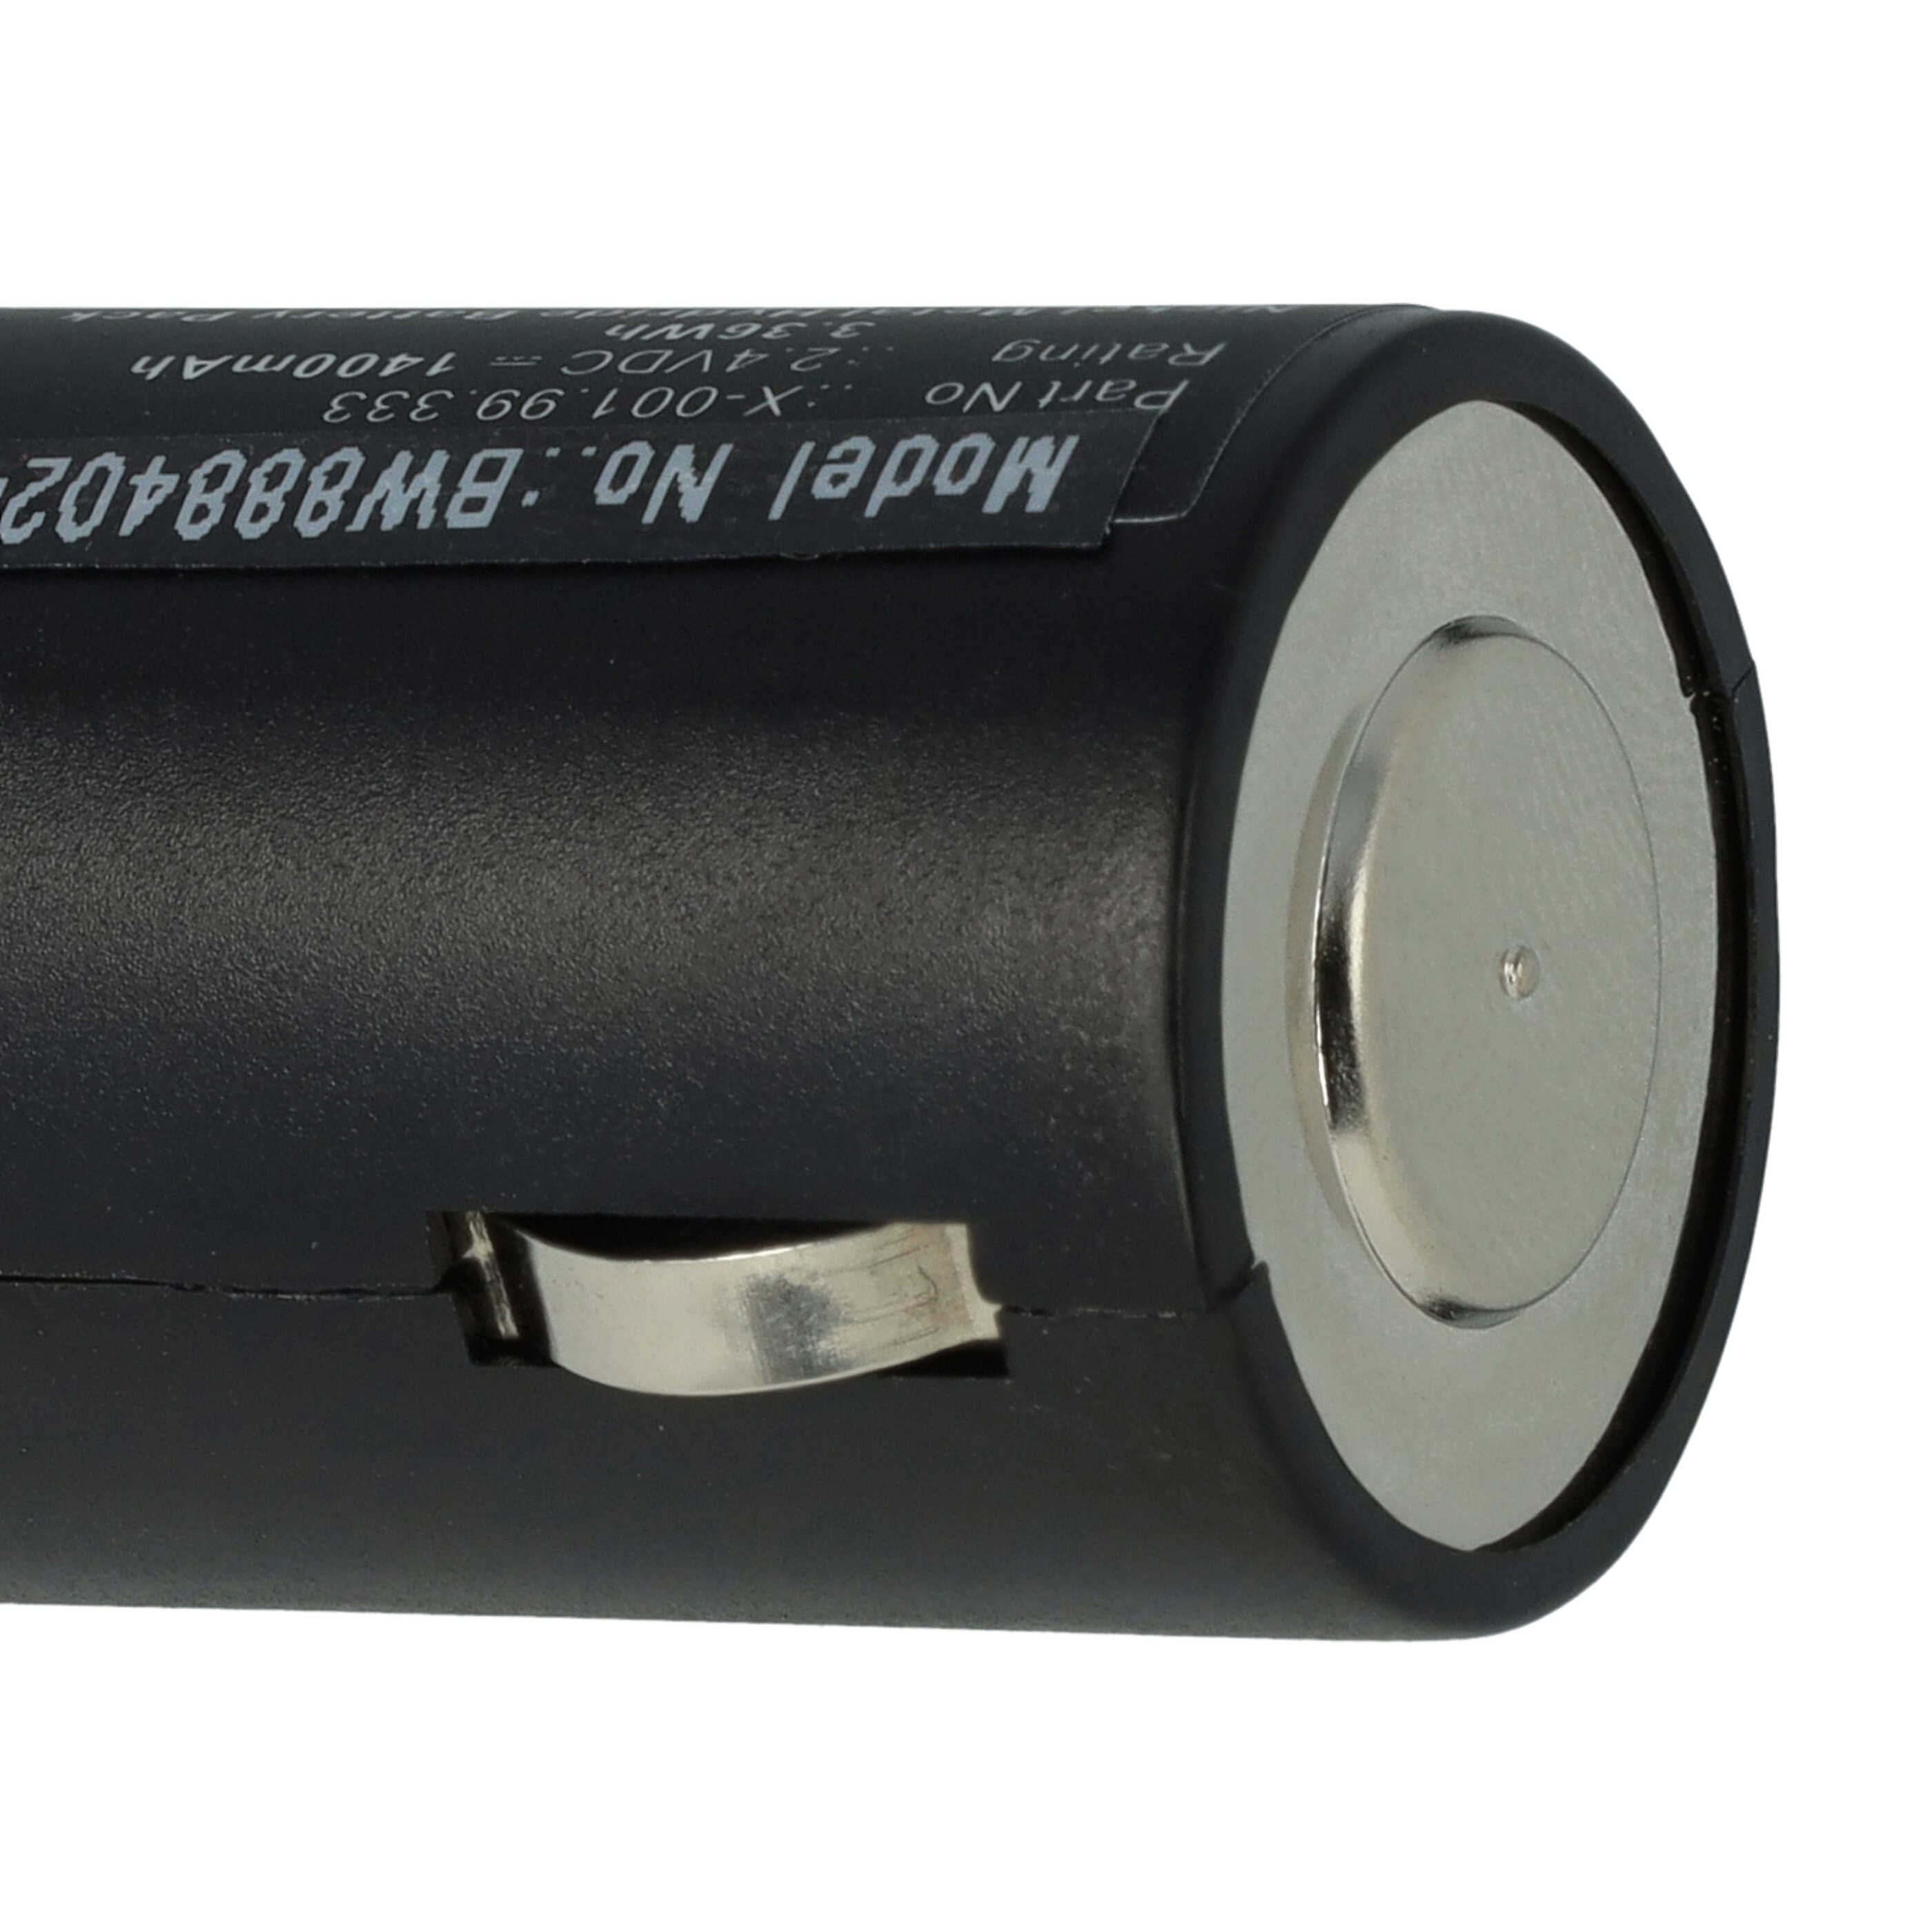 Batterie remplace Heine X-001.99.333 pour appareil médical - 1400mAh 2,4V NiMH